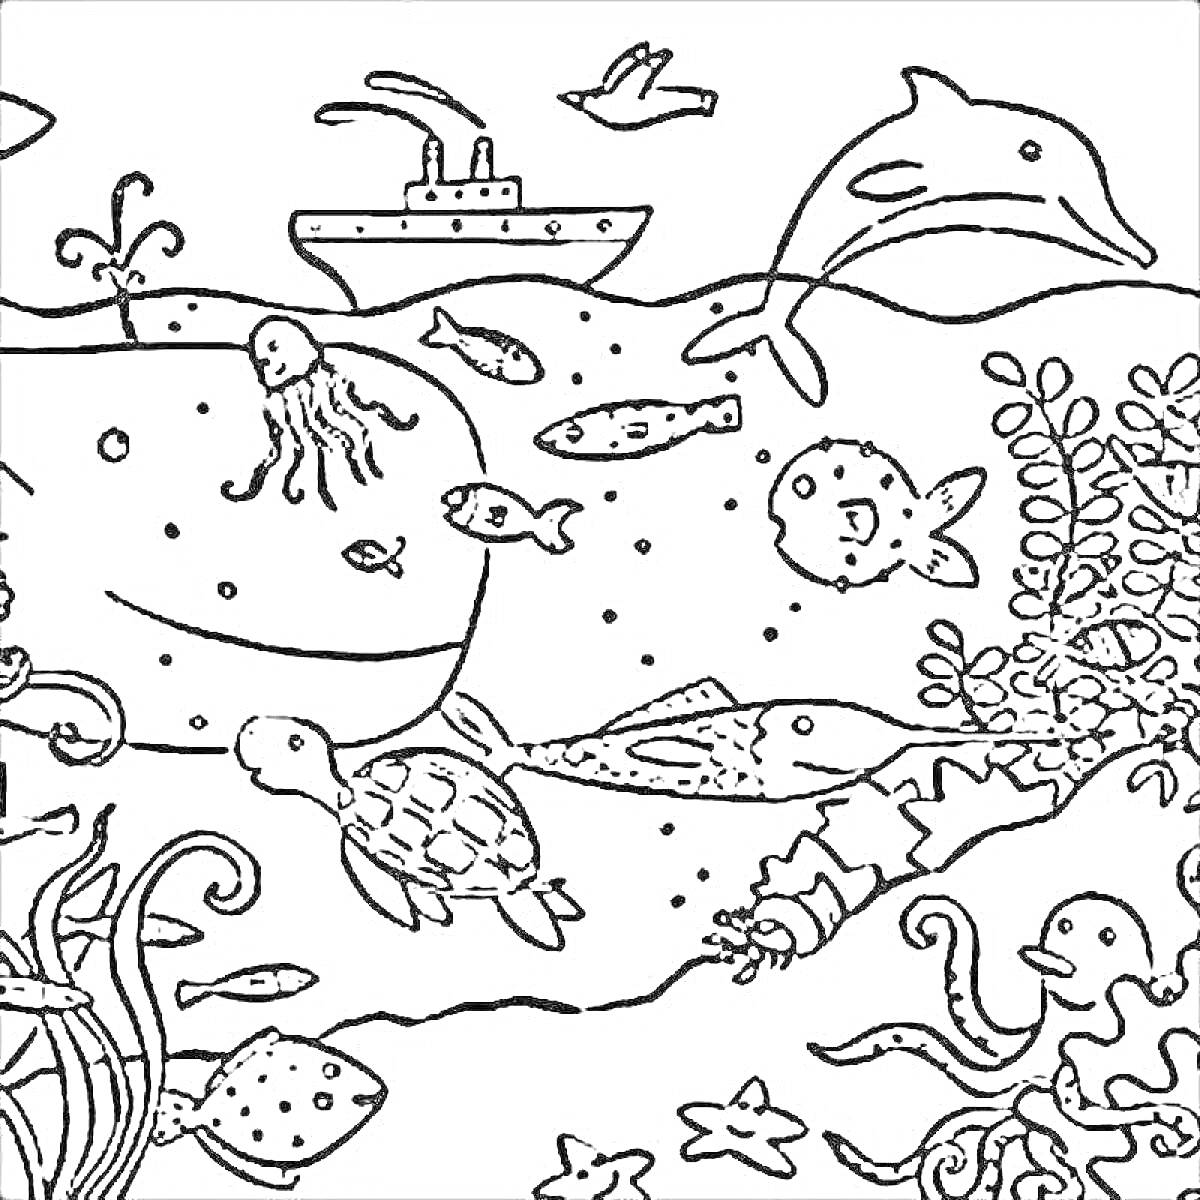 На раскраске изображено: Подводный мир, Черепаха, Медуза, Кораллы, Водоросли, Пеликан, Корабль, Для детей, Акулы, Дельфины, Киты, Осьминоги, Рыба